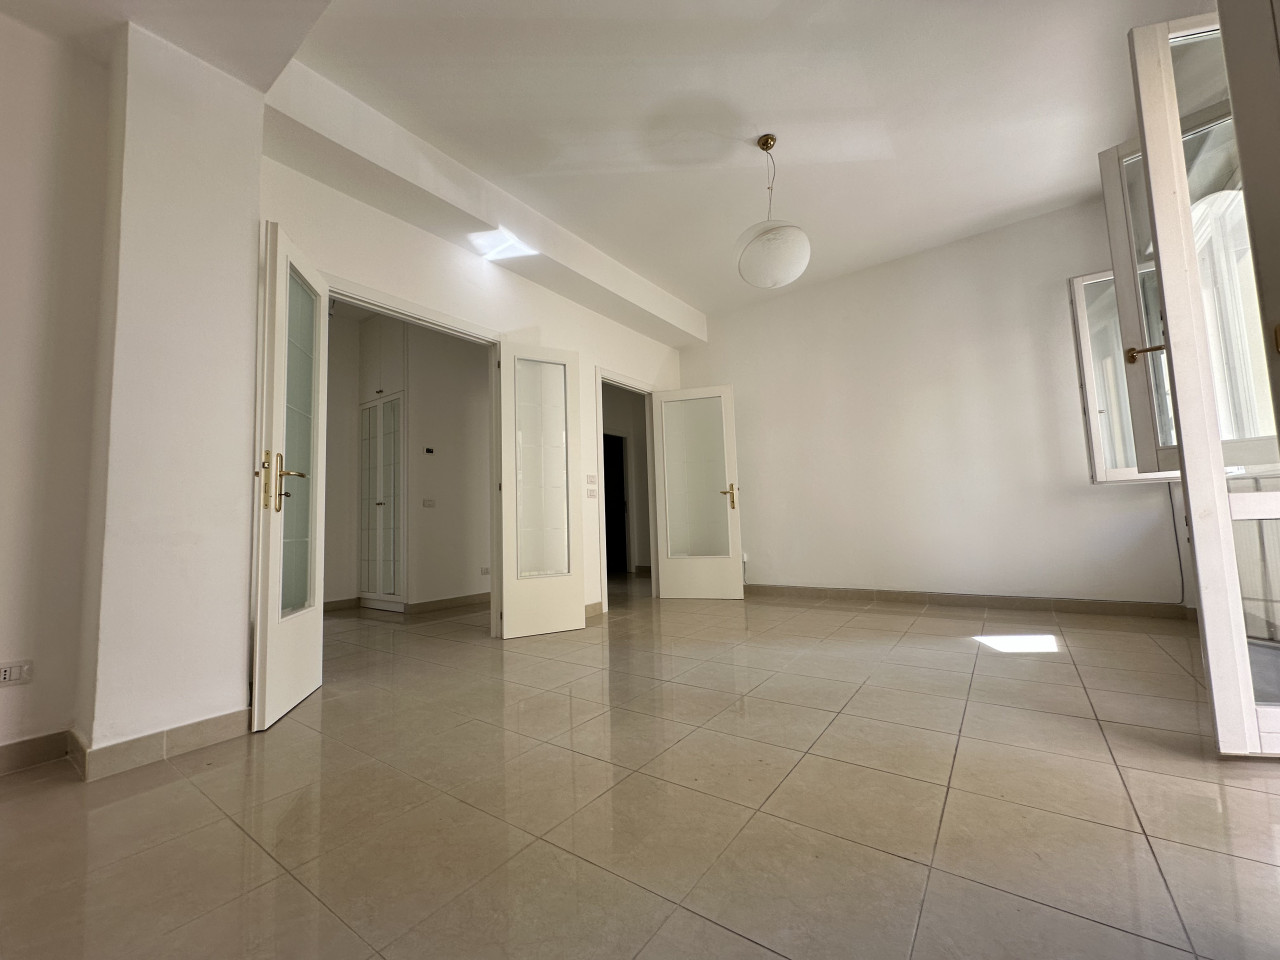 Ancona centralissimo vendiamo appartamento mq. con balconi e cantina